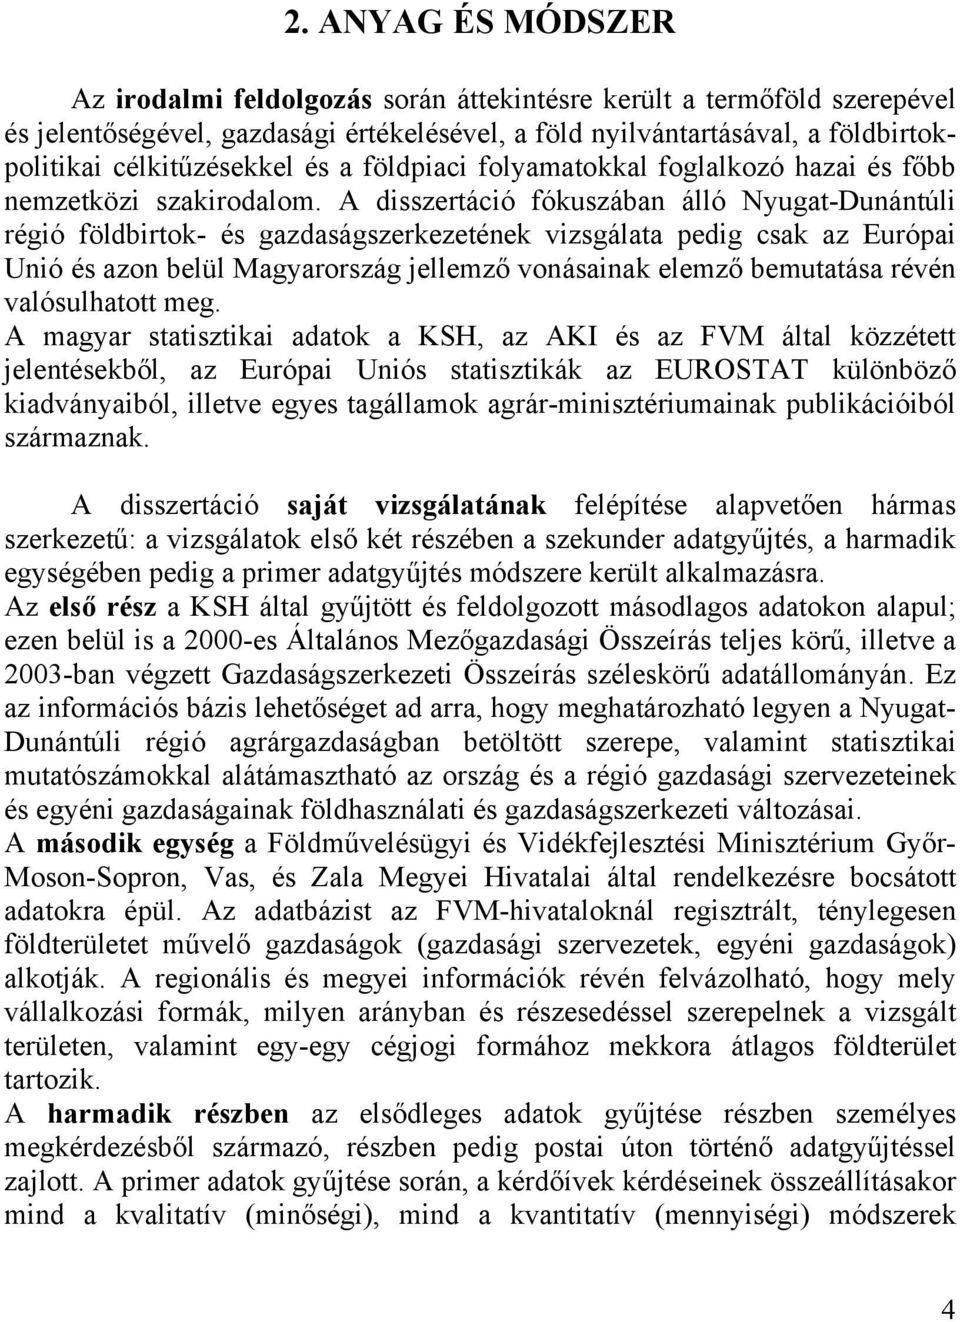 A disszertáció fókuszában álló Nyugat-Dunántúli régió földbirtok- és gazdaságszerkezetének vizsgálata pedig csak az Európai Unió és azon belül Magyarország jellemző vonásainak elemző bemutatása révén